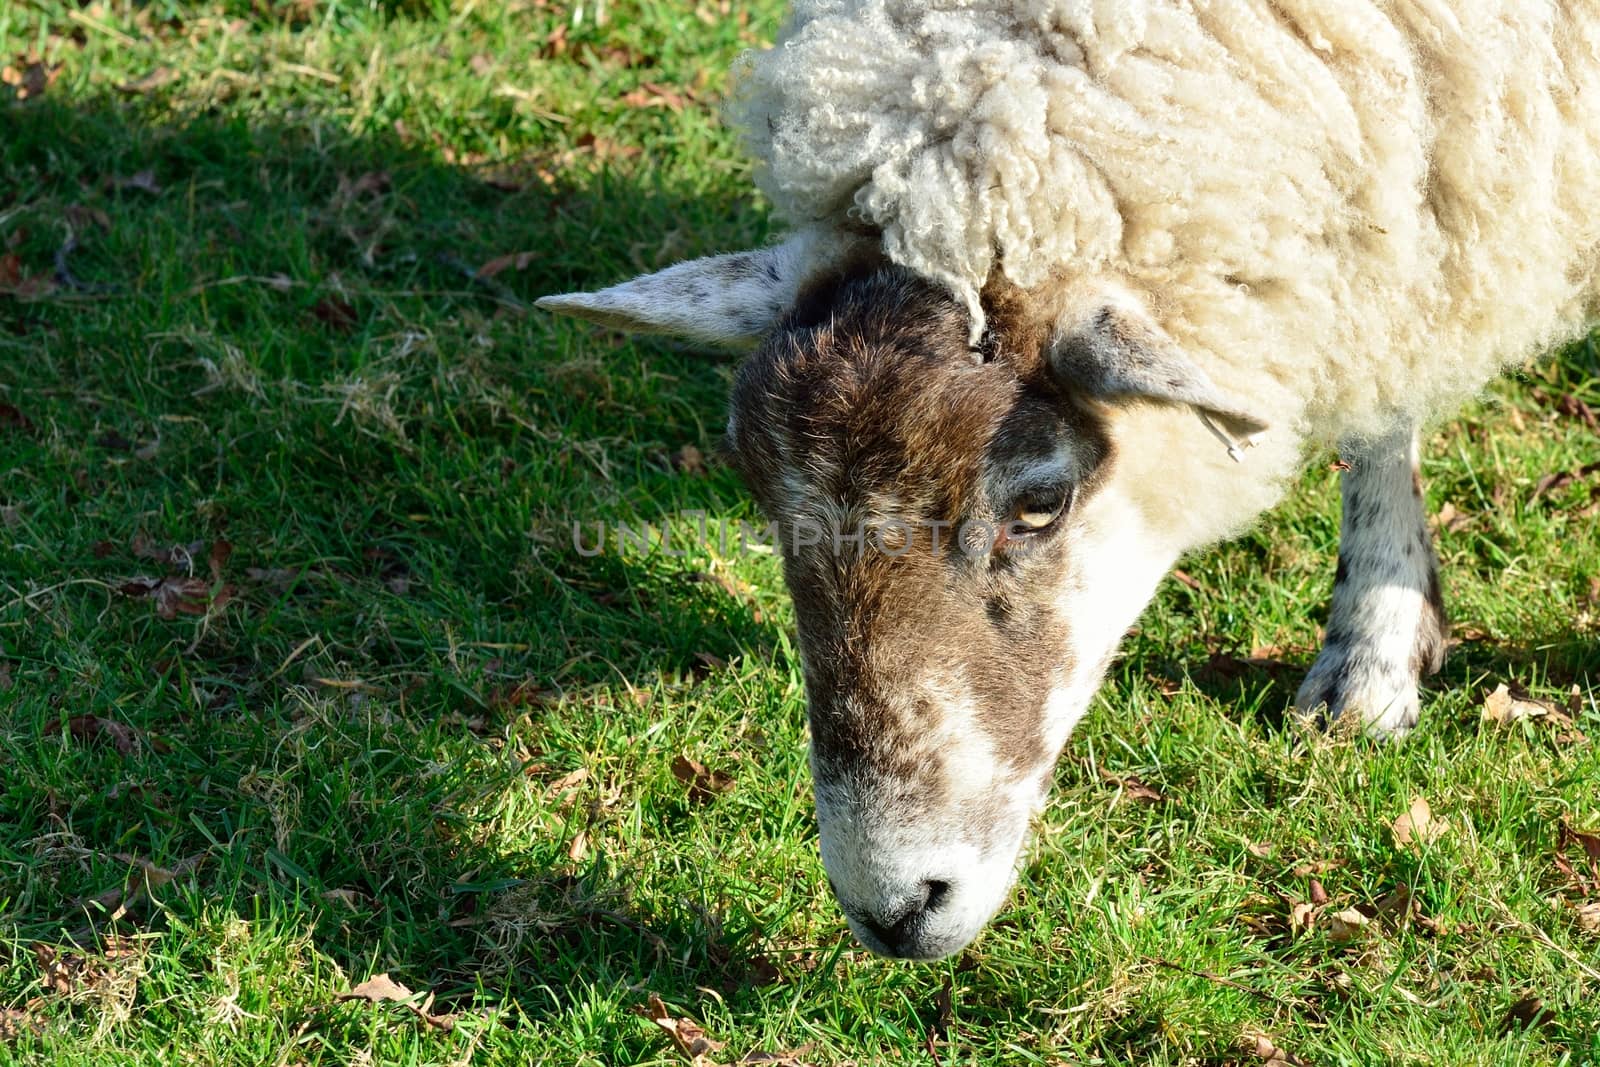 Head of a sheep feeding on grass